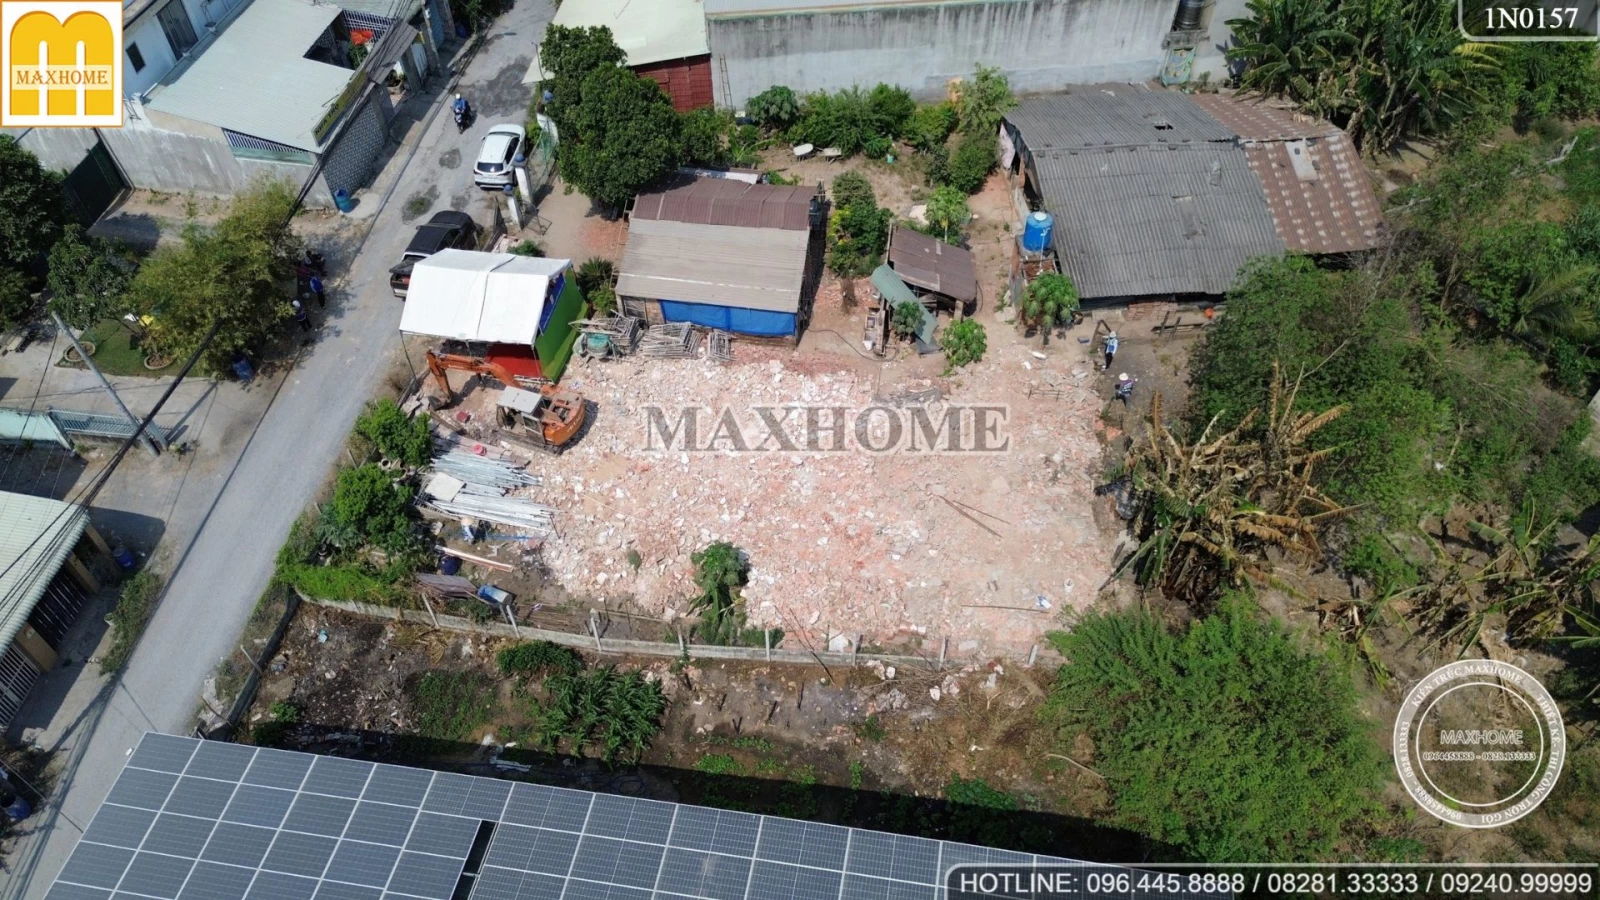 Lễ khởi công động thổ công trình nhà 2 tầng mái Nhật Maxhome thi công trọn gói tại Củ Chi | MH03214